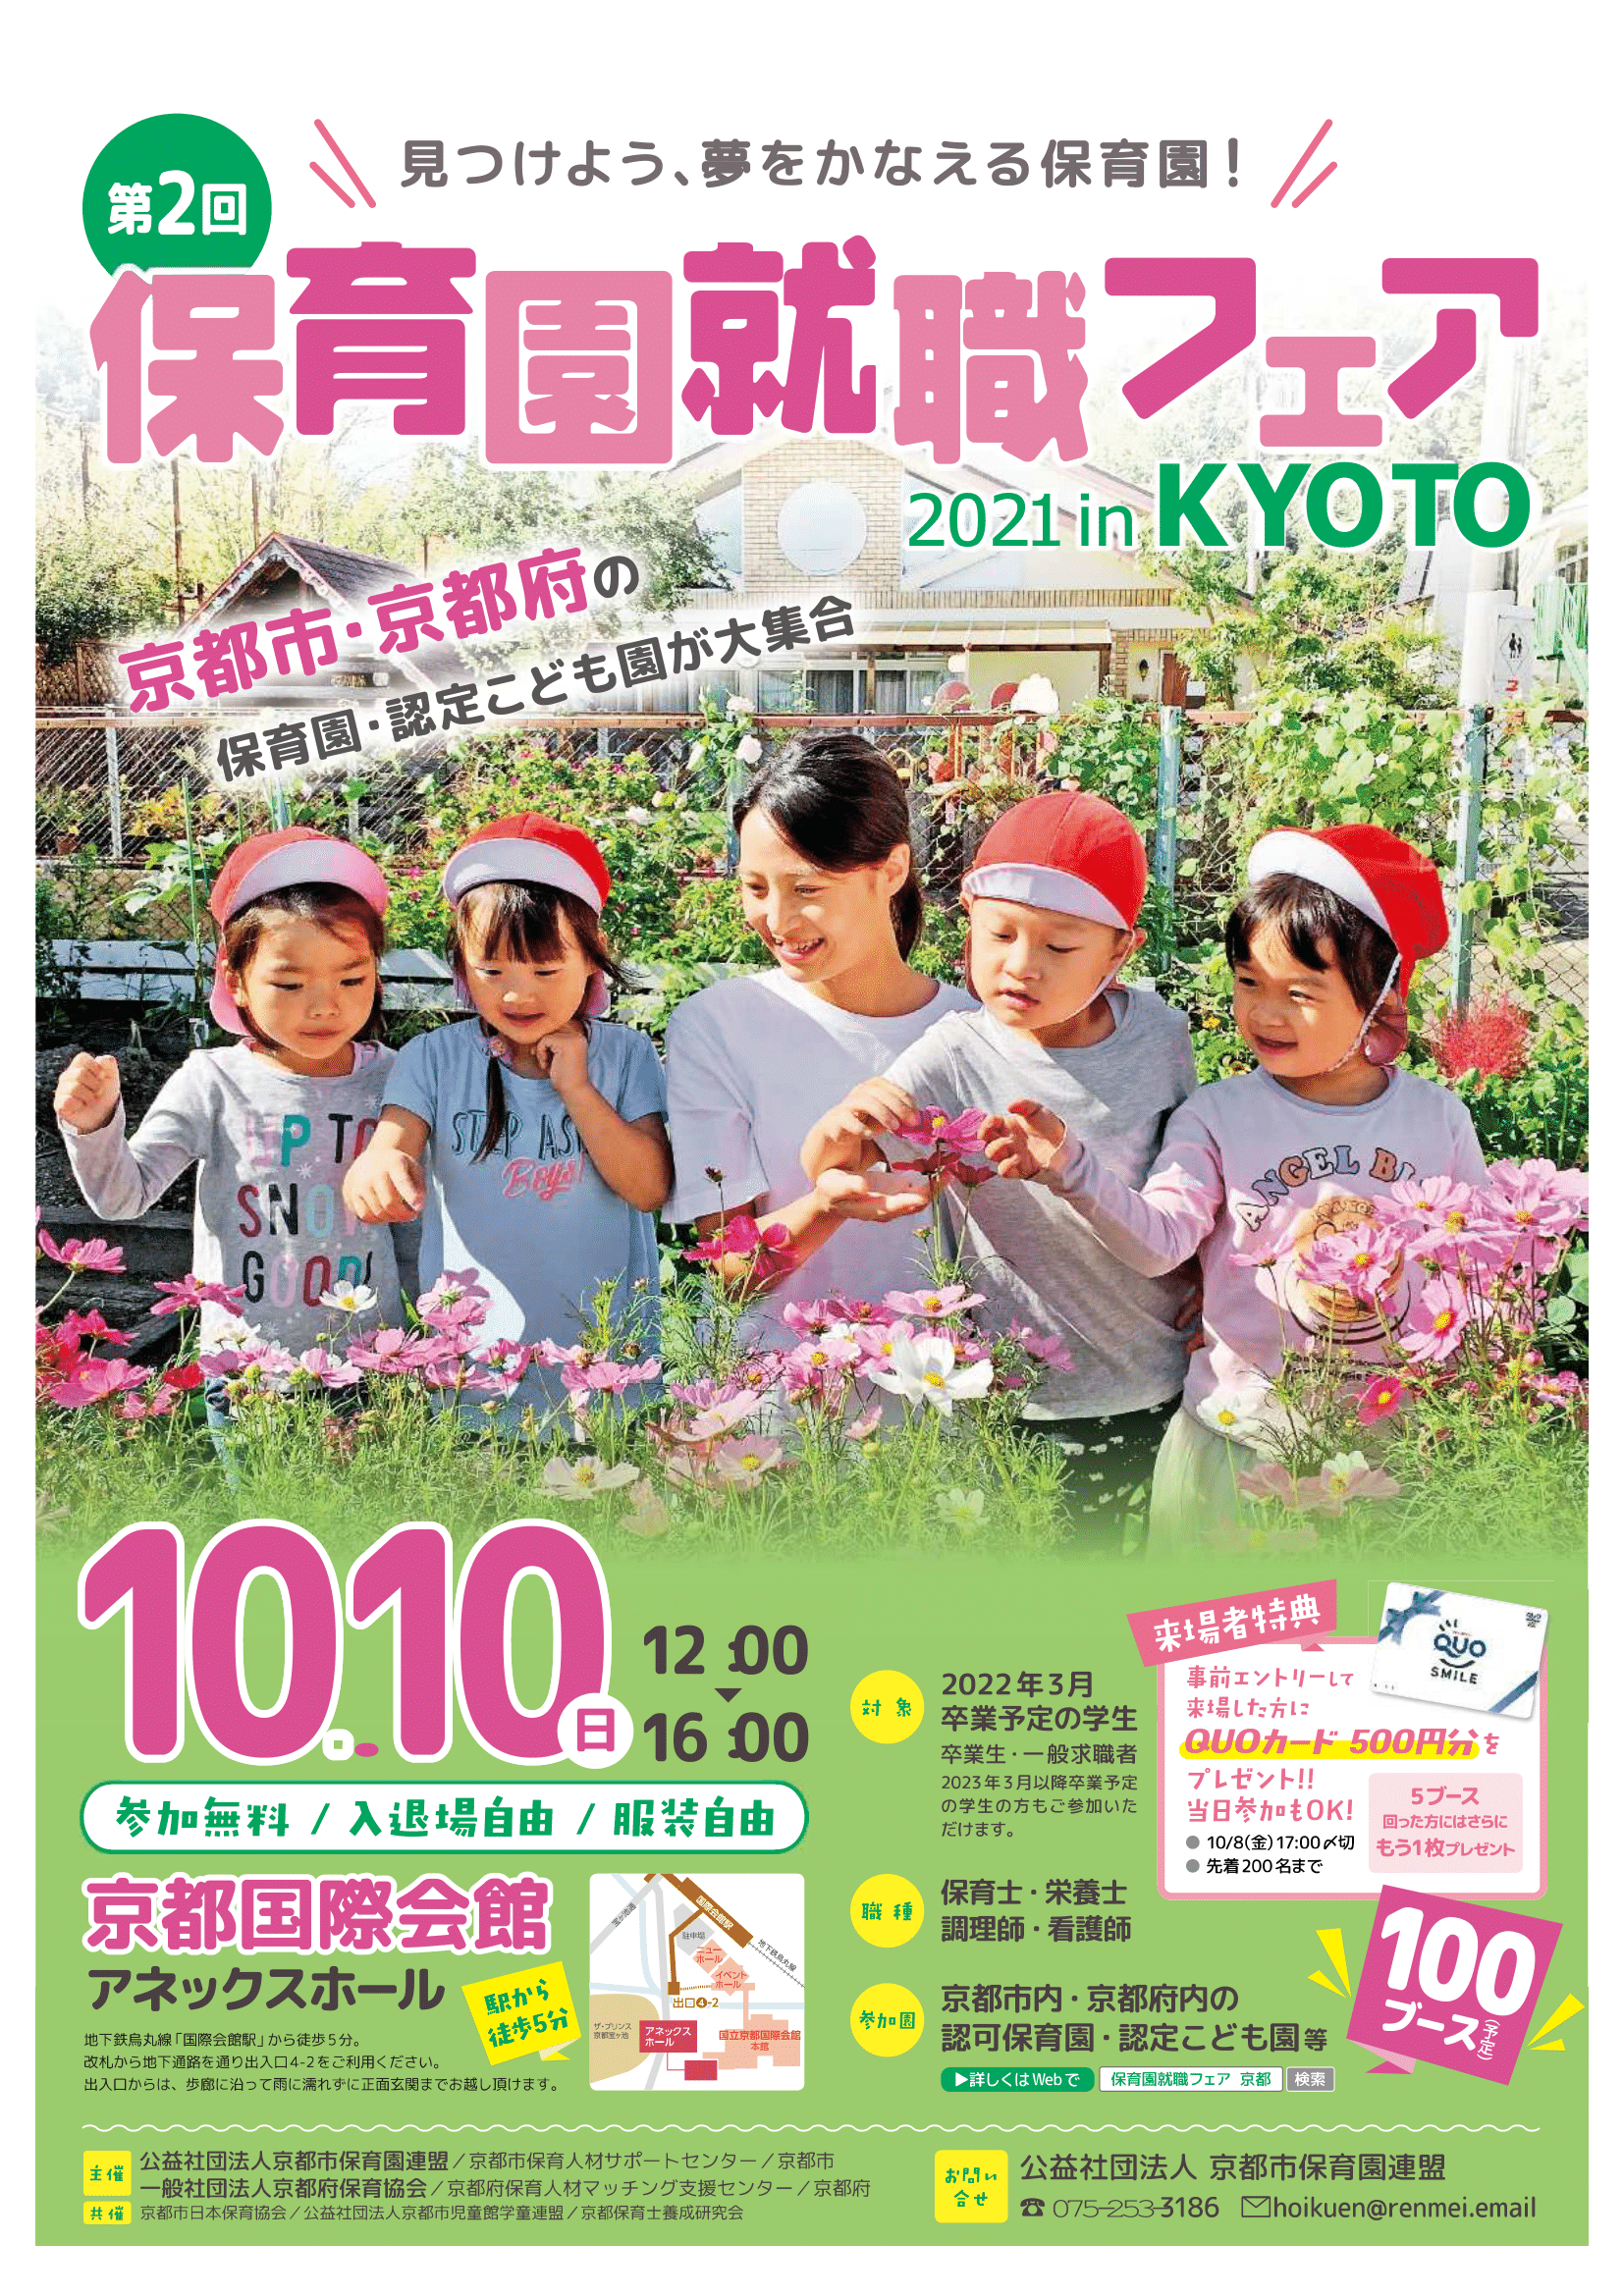 【10月10日開催】第2回　保育園就職フェア2021 in KYOTO